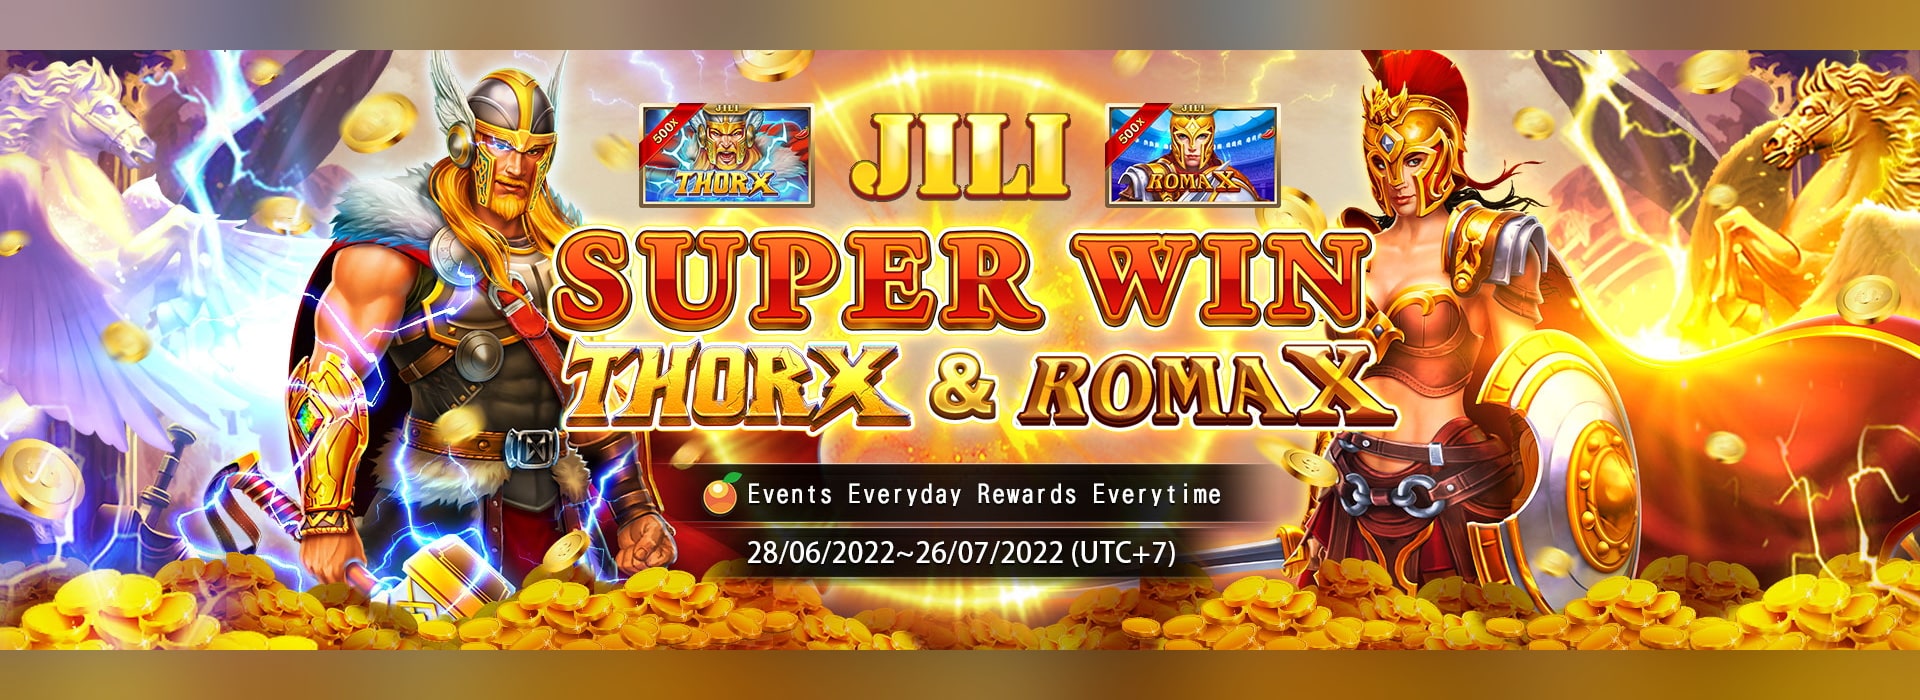 Jili Super Win 雷神X & 罗马X